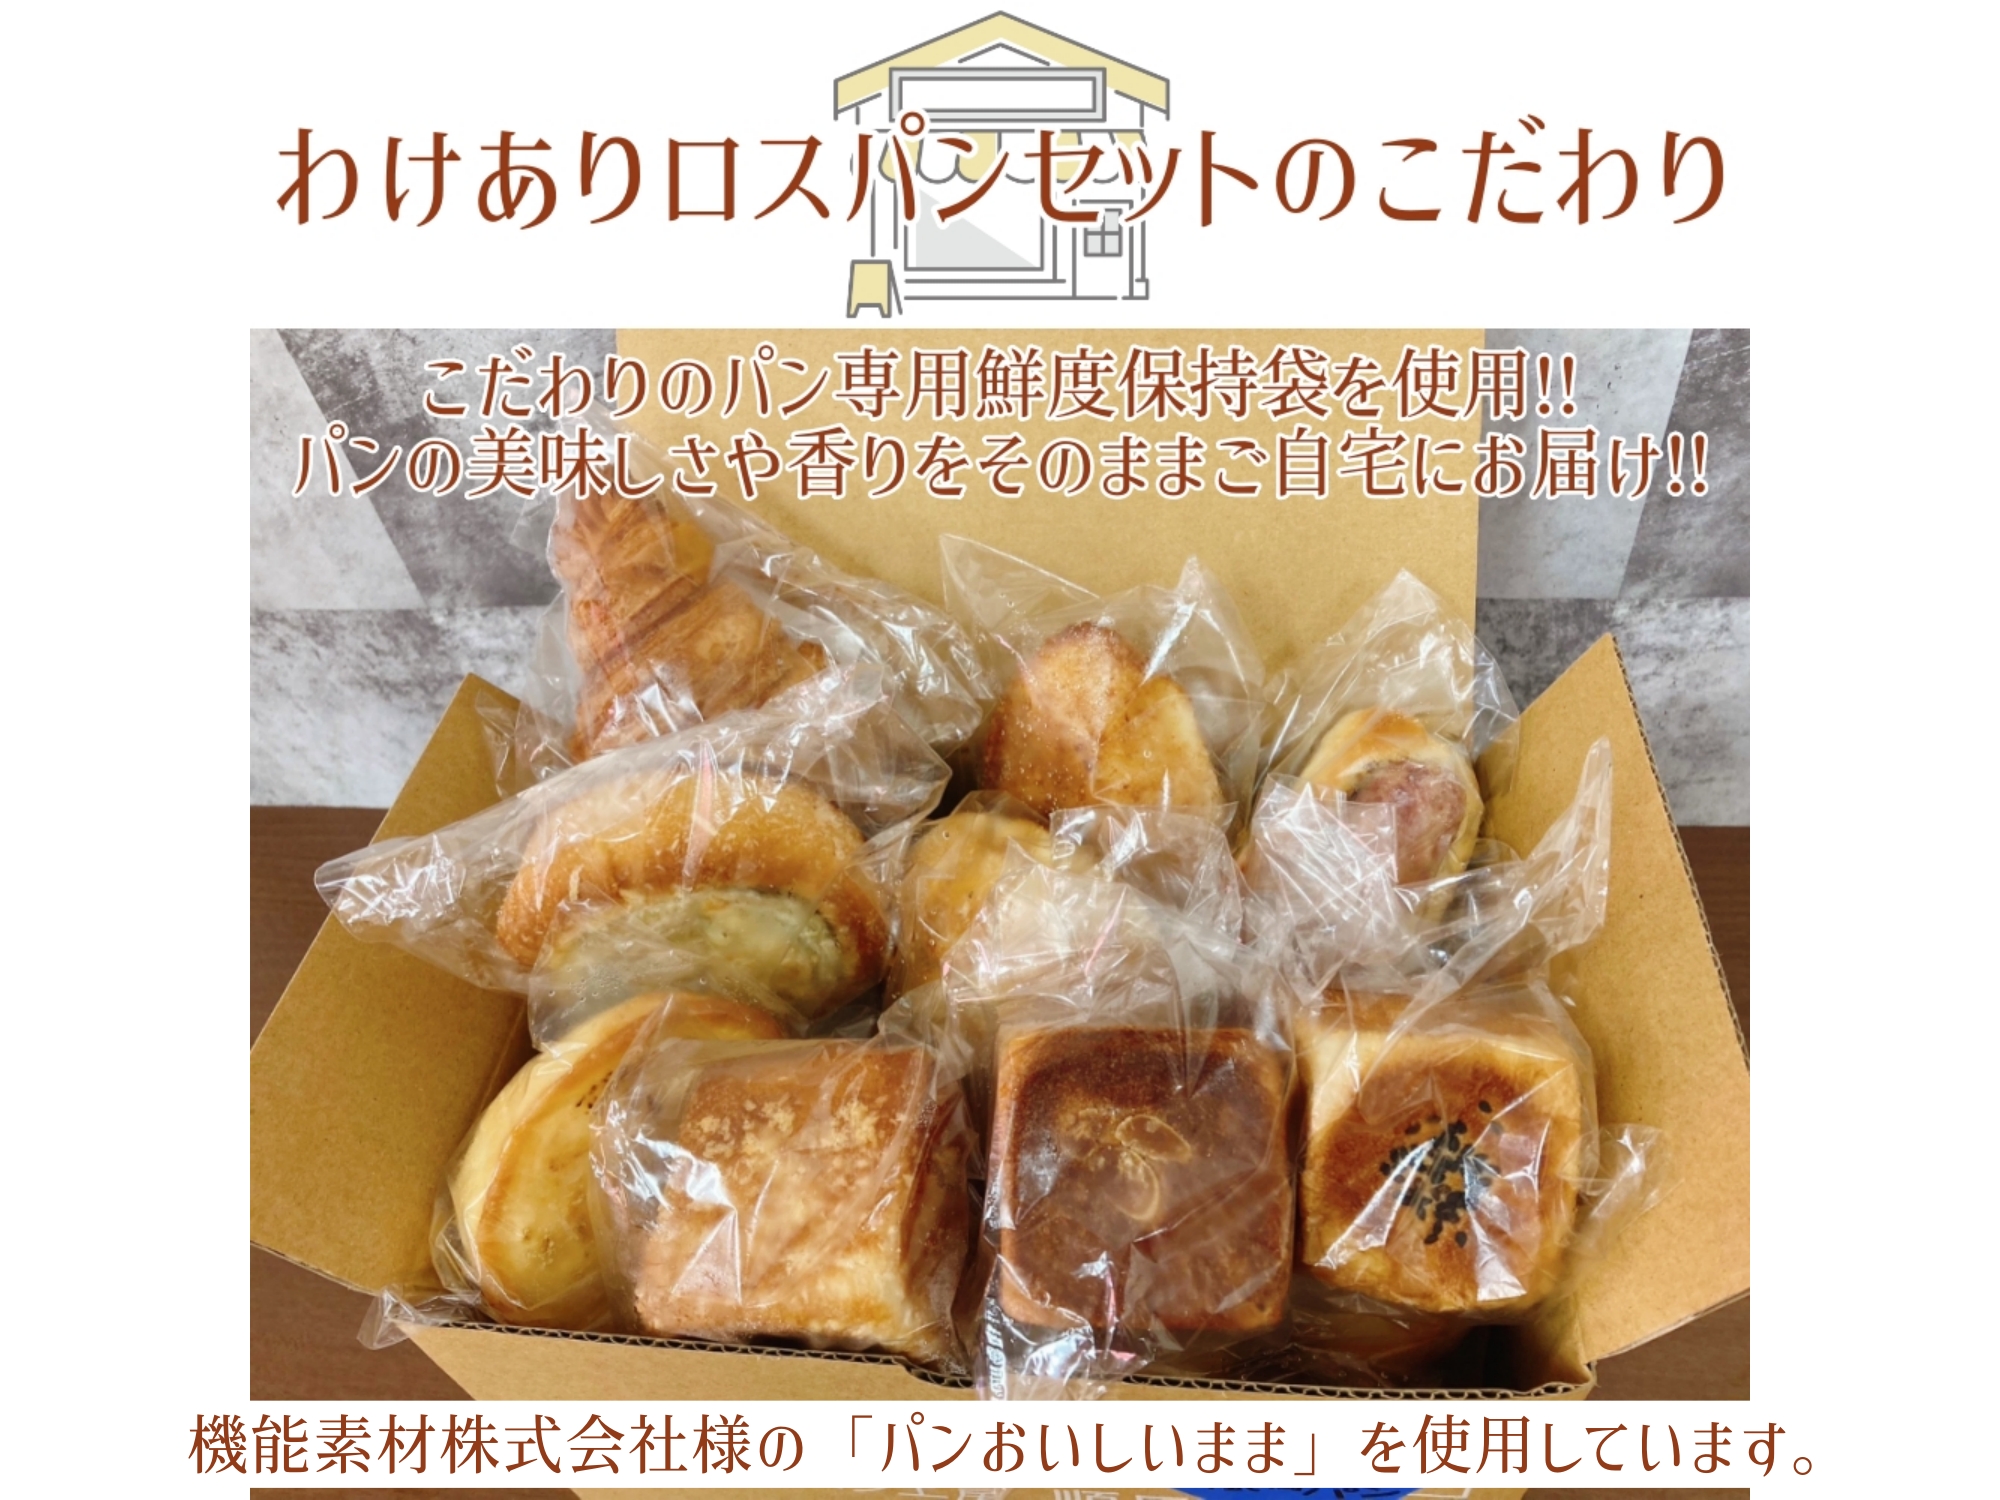 送料無料】わけありロスパンセット 15点【順風満パン】【冷凍パン